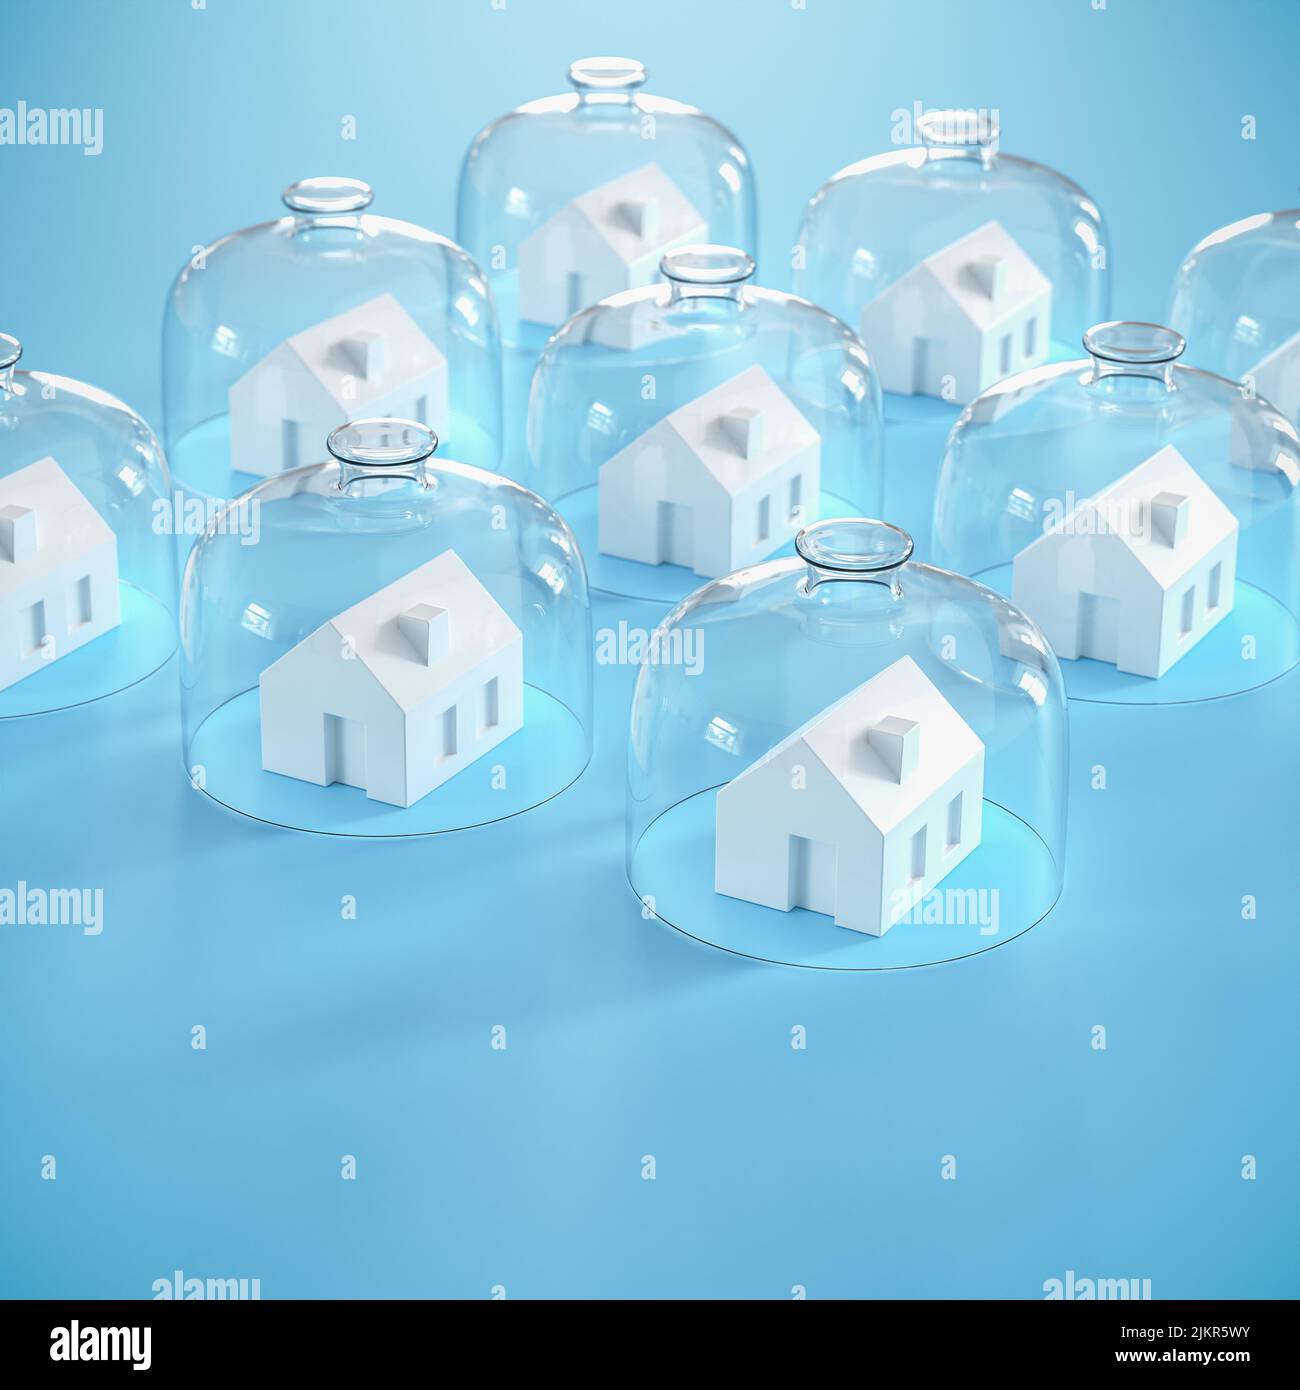 Propecting su concepto de la característica - seguro, vigilancia. Varias casas modelo con cúpulas de cristal. Foto de stock